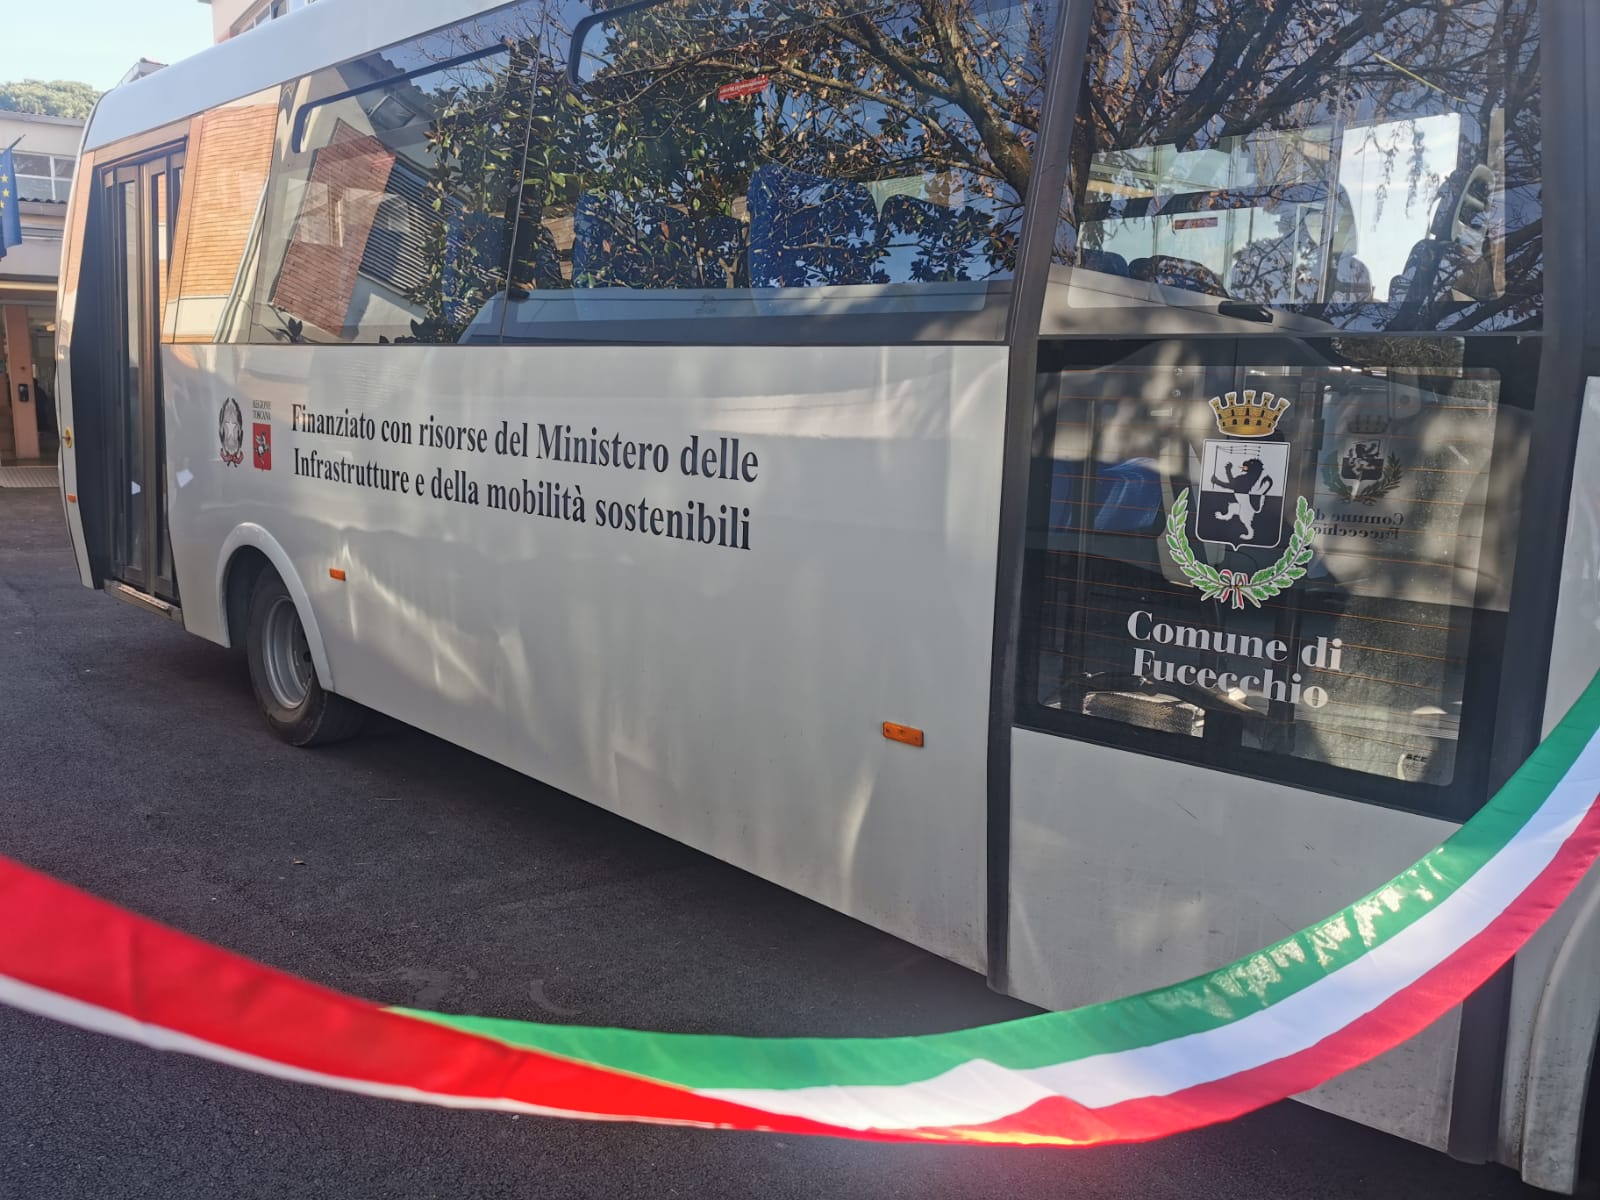 Inaugurati due nuovi autobus per il trasporto pubblico e scolastico (Fonte foto Comune di Fucecchio)